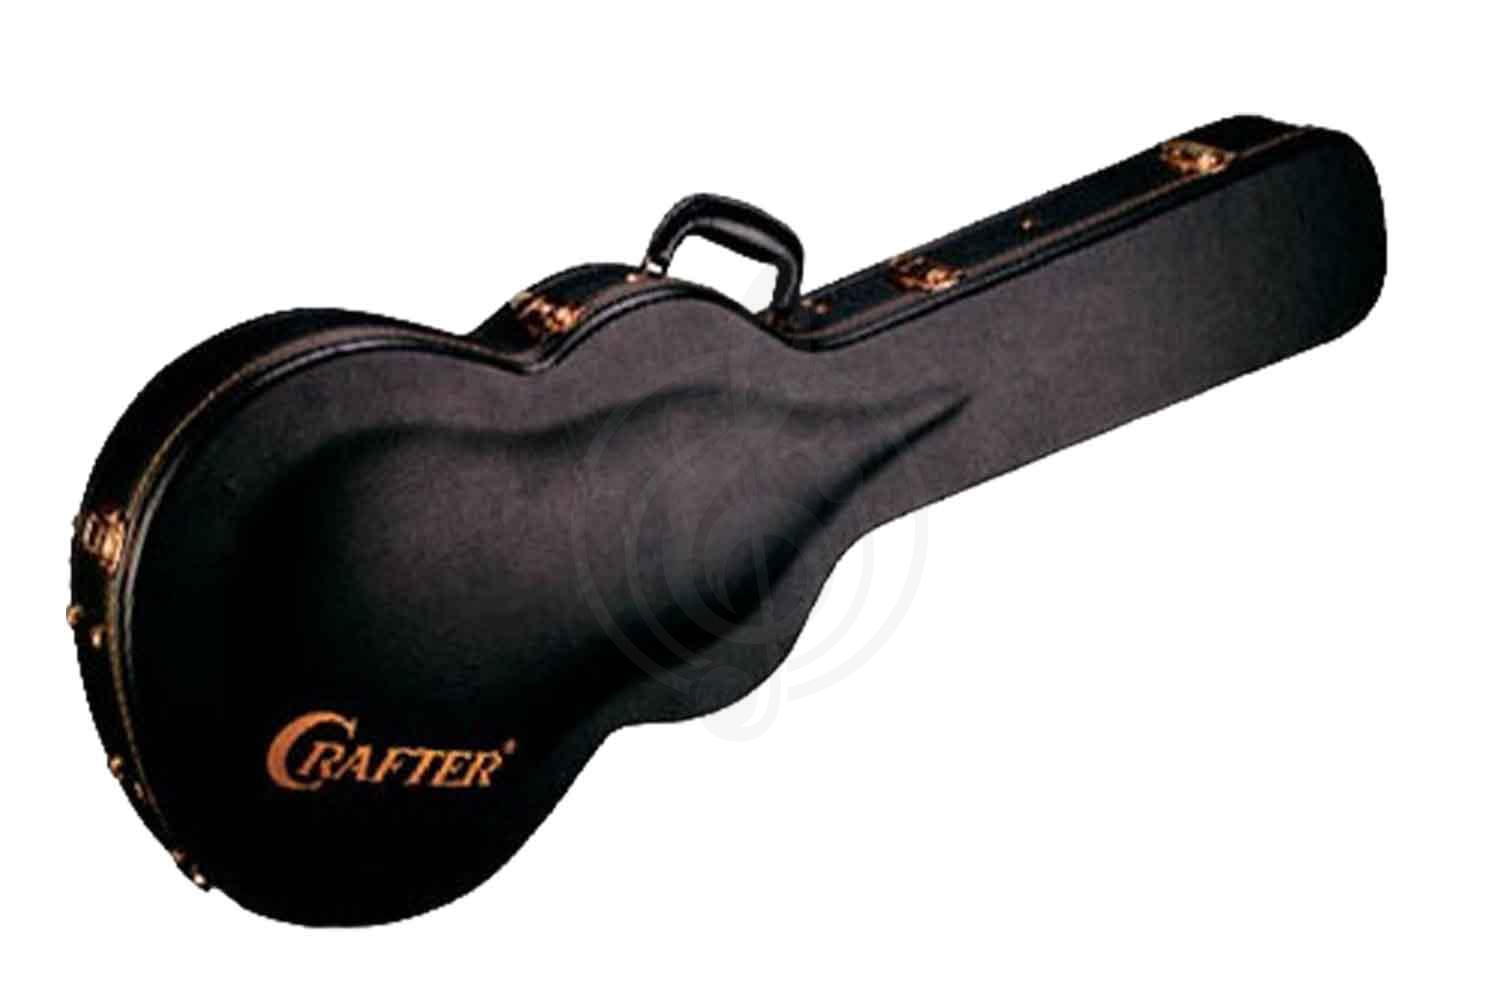 Акустическая гитара Акустические гитары Crafter CRAFTER DLX-3000 RS + Кейс - Акустическая гитара шестиструнная Крафтер DLX-3000/RS - фото 3